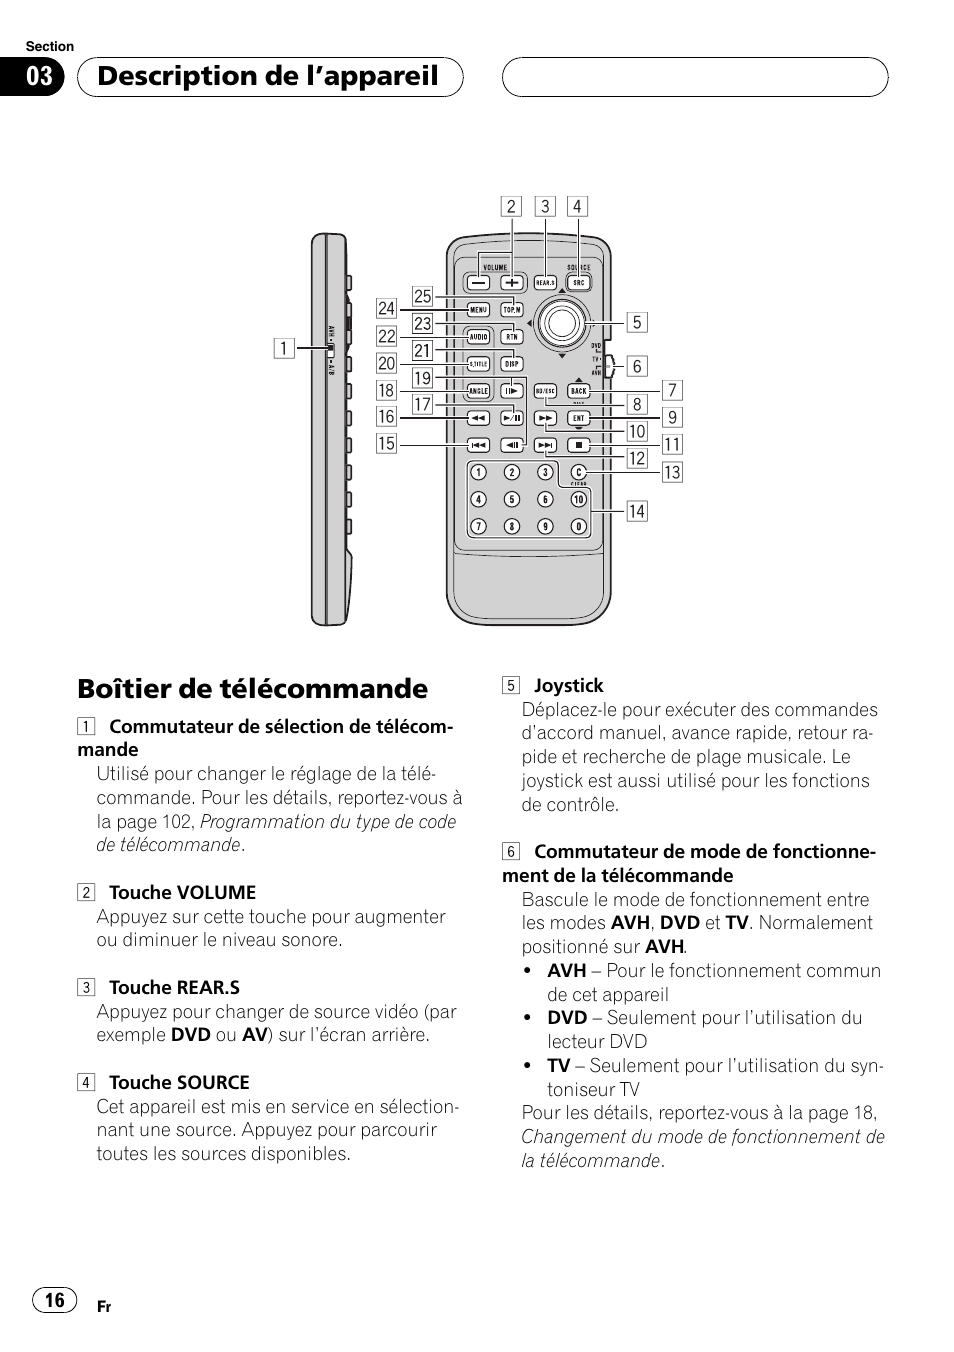 Boîtier de télécommande 16, Boîtier de télécommande, Description de lappareil | Pioneer AVH-P7500DVD Manuel d'utilisation | Page 16 / 128